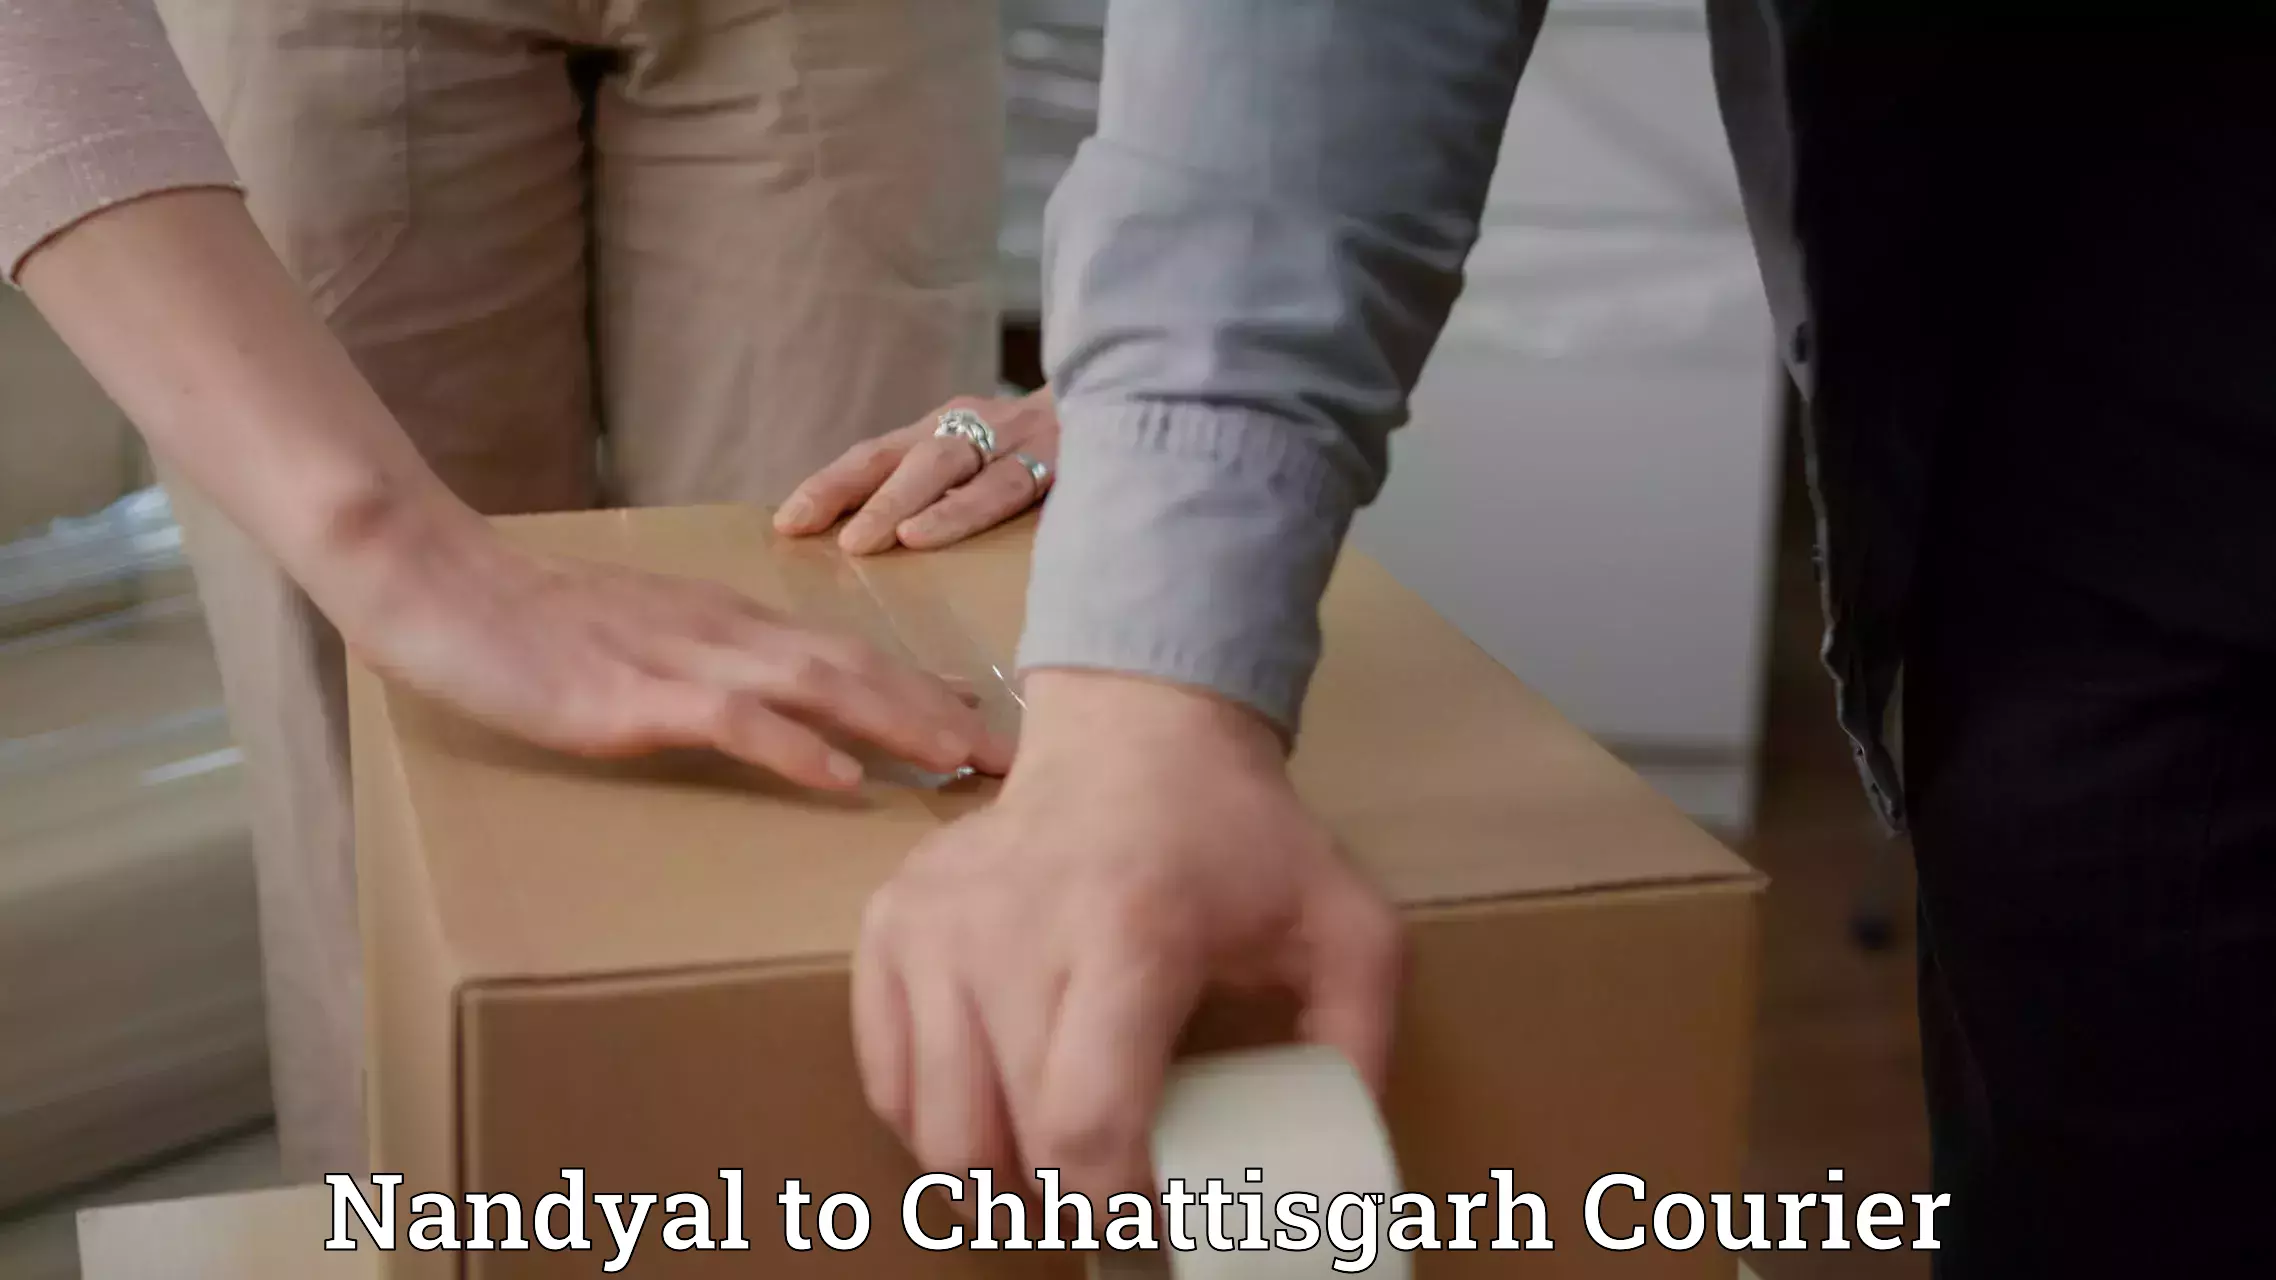 Affordable parcel service Nandyal to Bastar